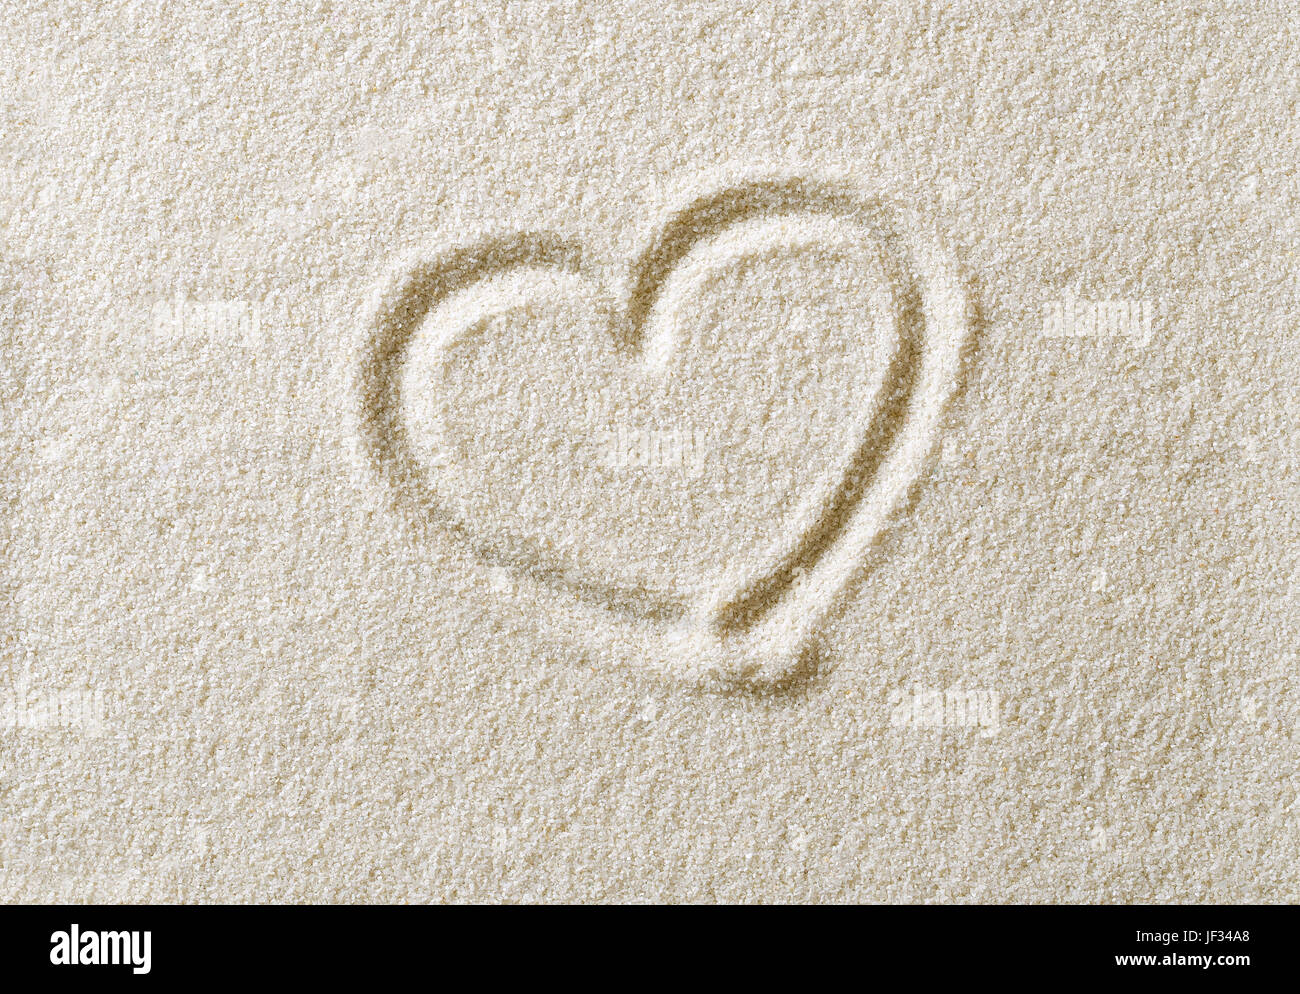 Símbolo de corazón dibujado en la arena de la superficie. Con forma de corazón, un ideograma para expresar emociones como el amor romántico. Una metáfora. Fotografía macro de cerca desde arriba. Foto de stock